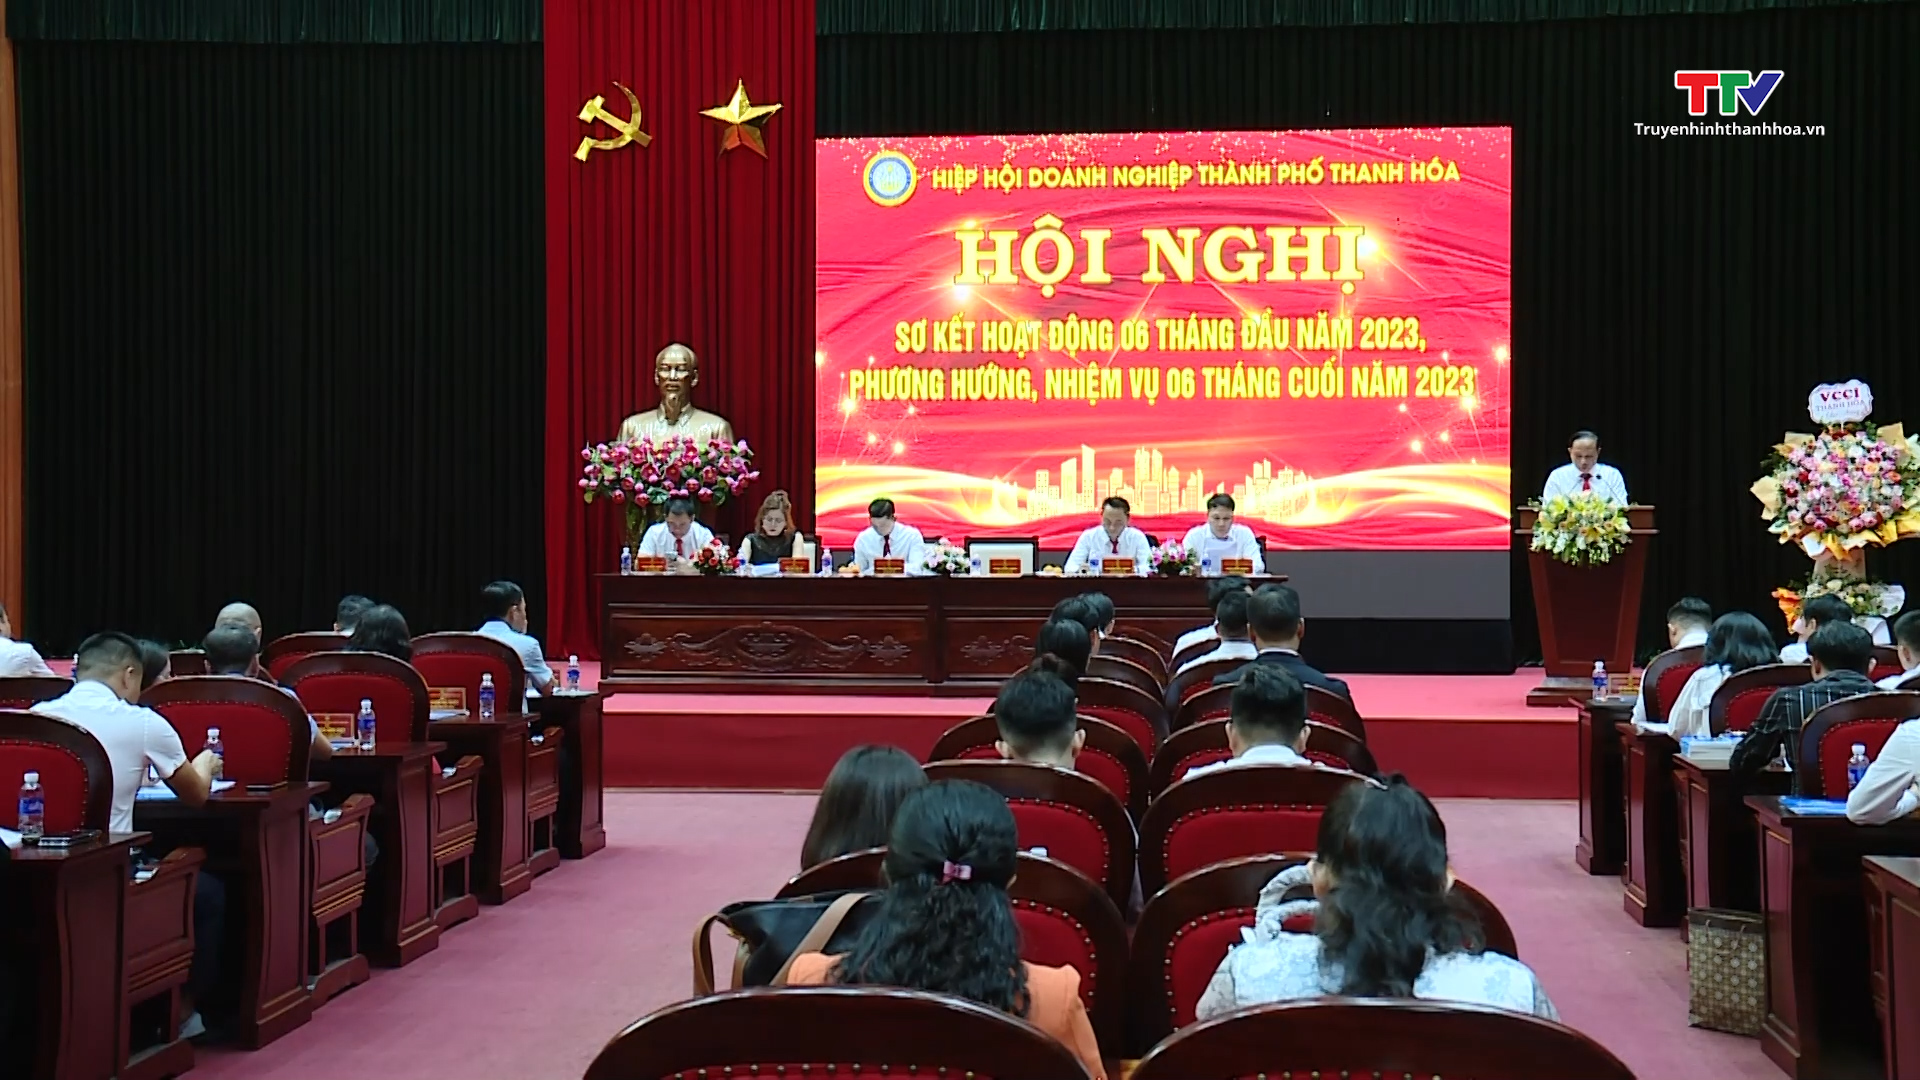 Hiệp hội Doanh nghiệp thành phố Thanh Hóa triển khai hoạt động 6 tháng cuối năm 2023 - Ảnh 1.